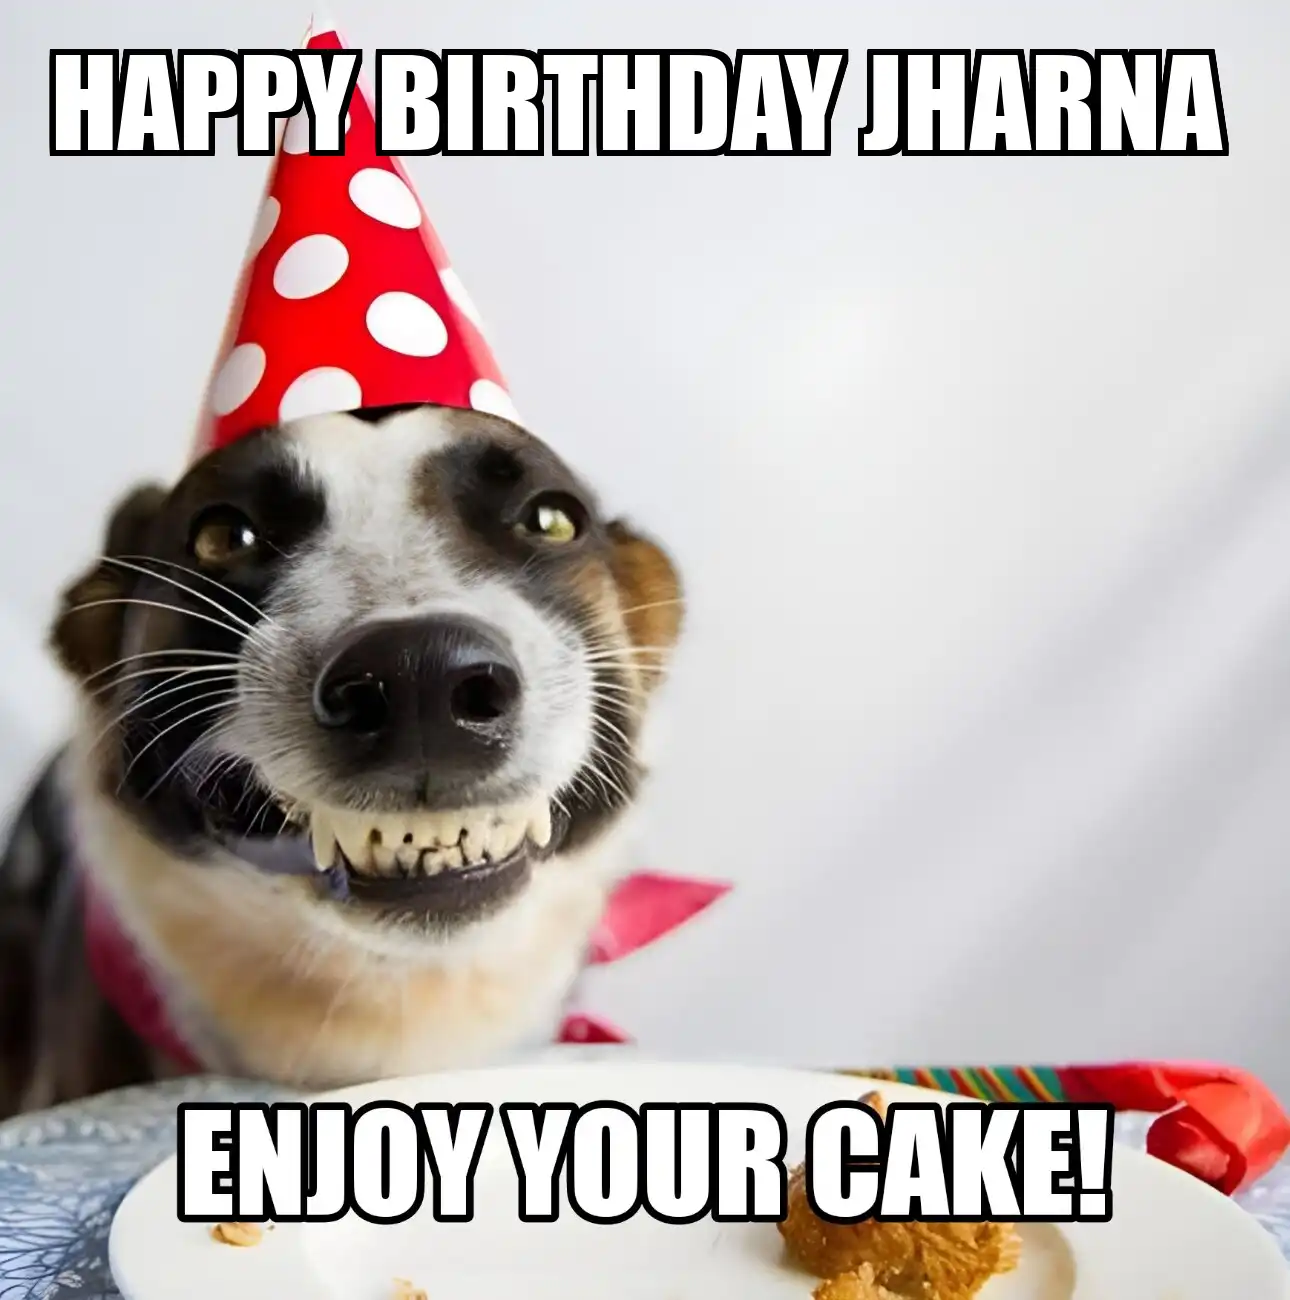 Happy Birthday Jharna Enjoy Your Cake Dog Meme